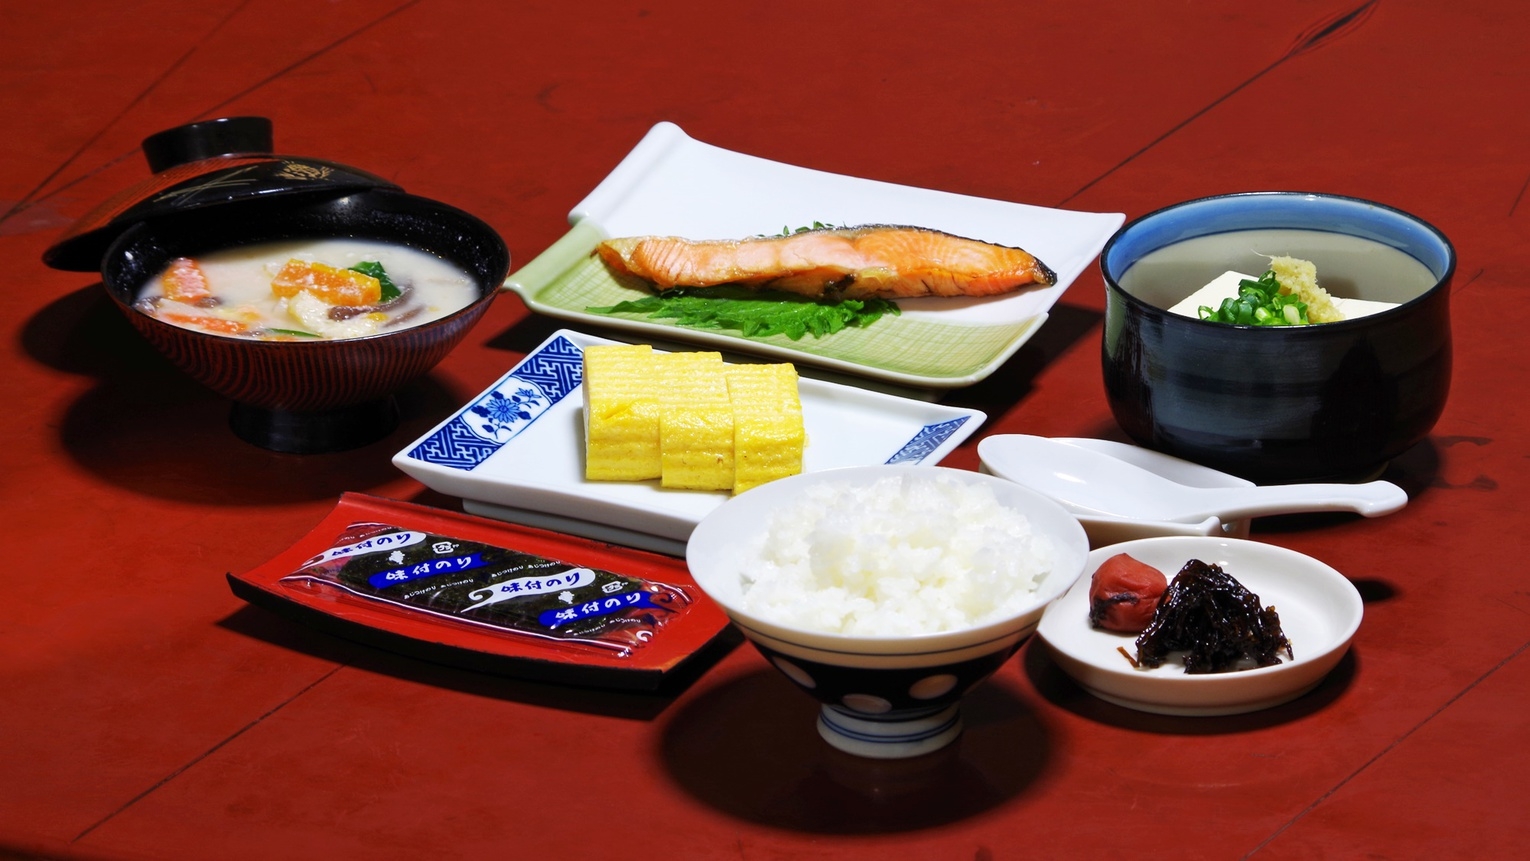 【朝食付き】これぞ日本の朝食♪朝は身体に優しい素朴な和定食をどうぞ♪